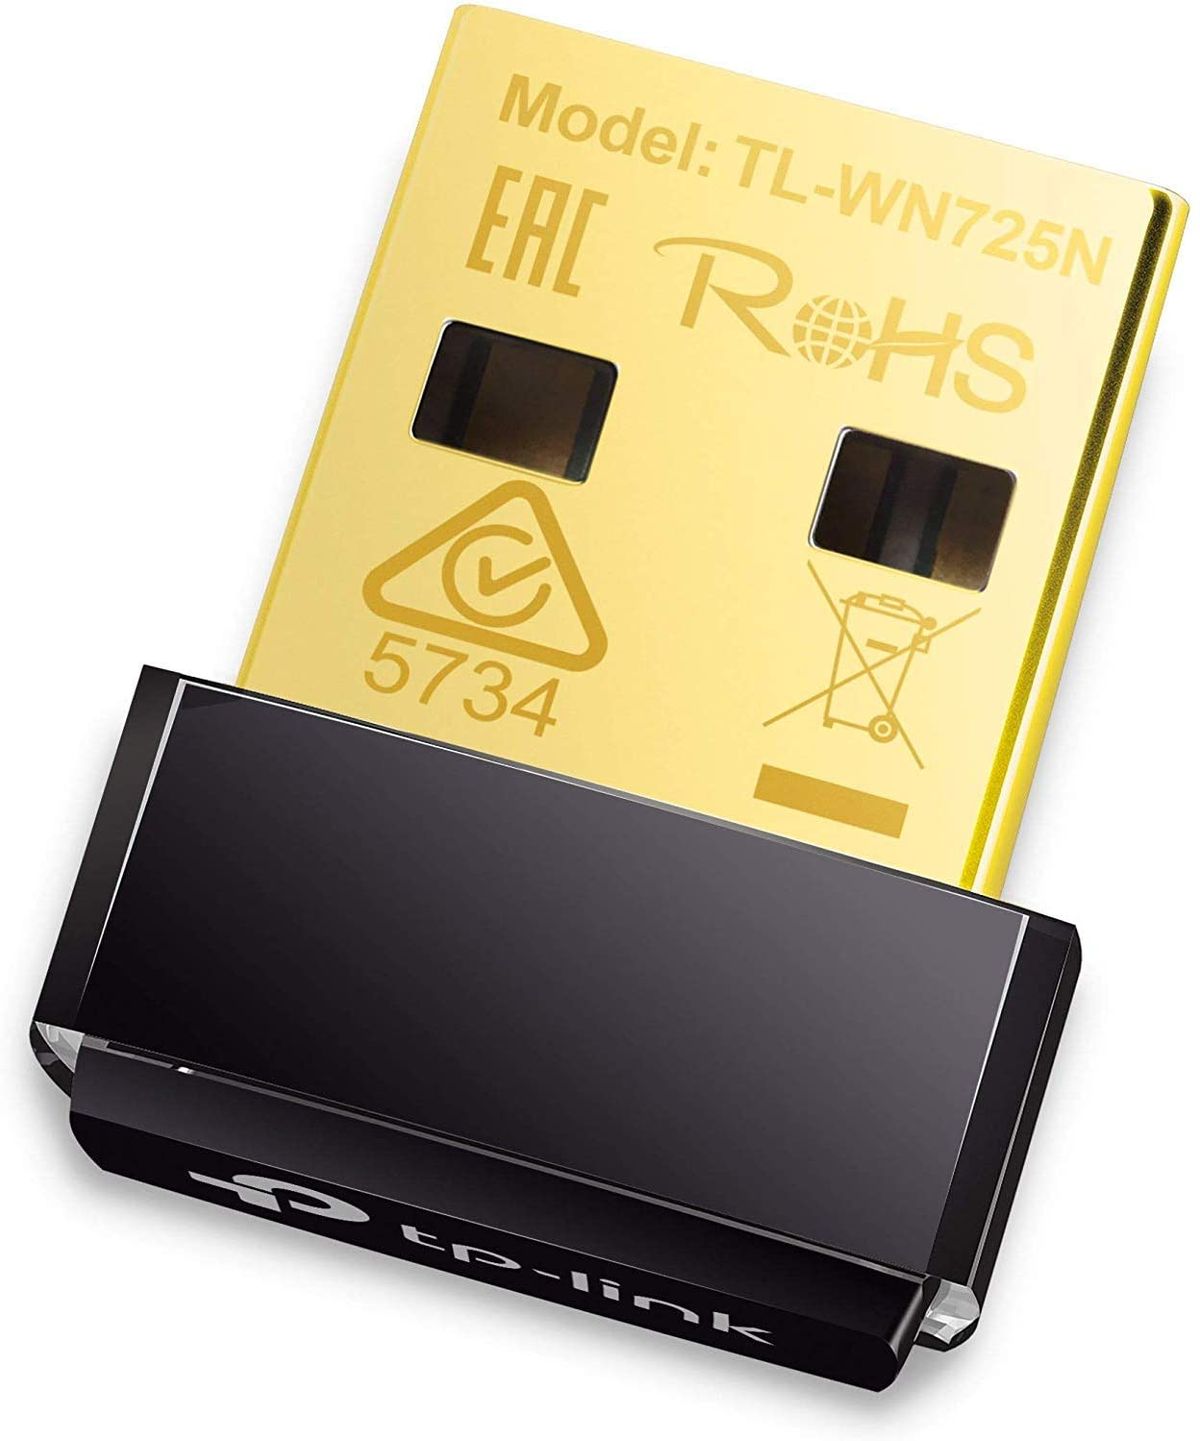 Adaptateur WiFi USB Linux BrosTrend 1200 Mbps, réseau double bande 5 GHz/867 Mbps + 2,4 GHz/300 Mbps, prise en charge d'Ubuntu, Mint, Debian, Kali, Kubuntu, Lubuntu, Xubunt